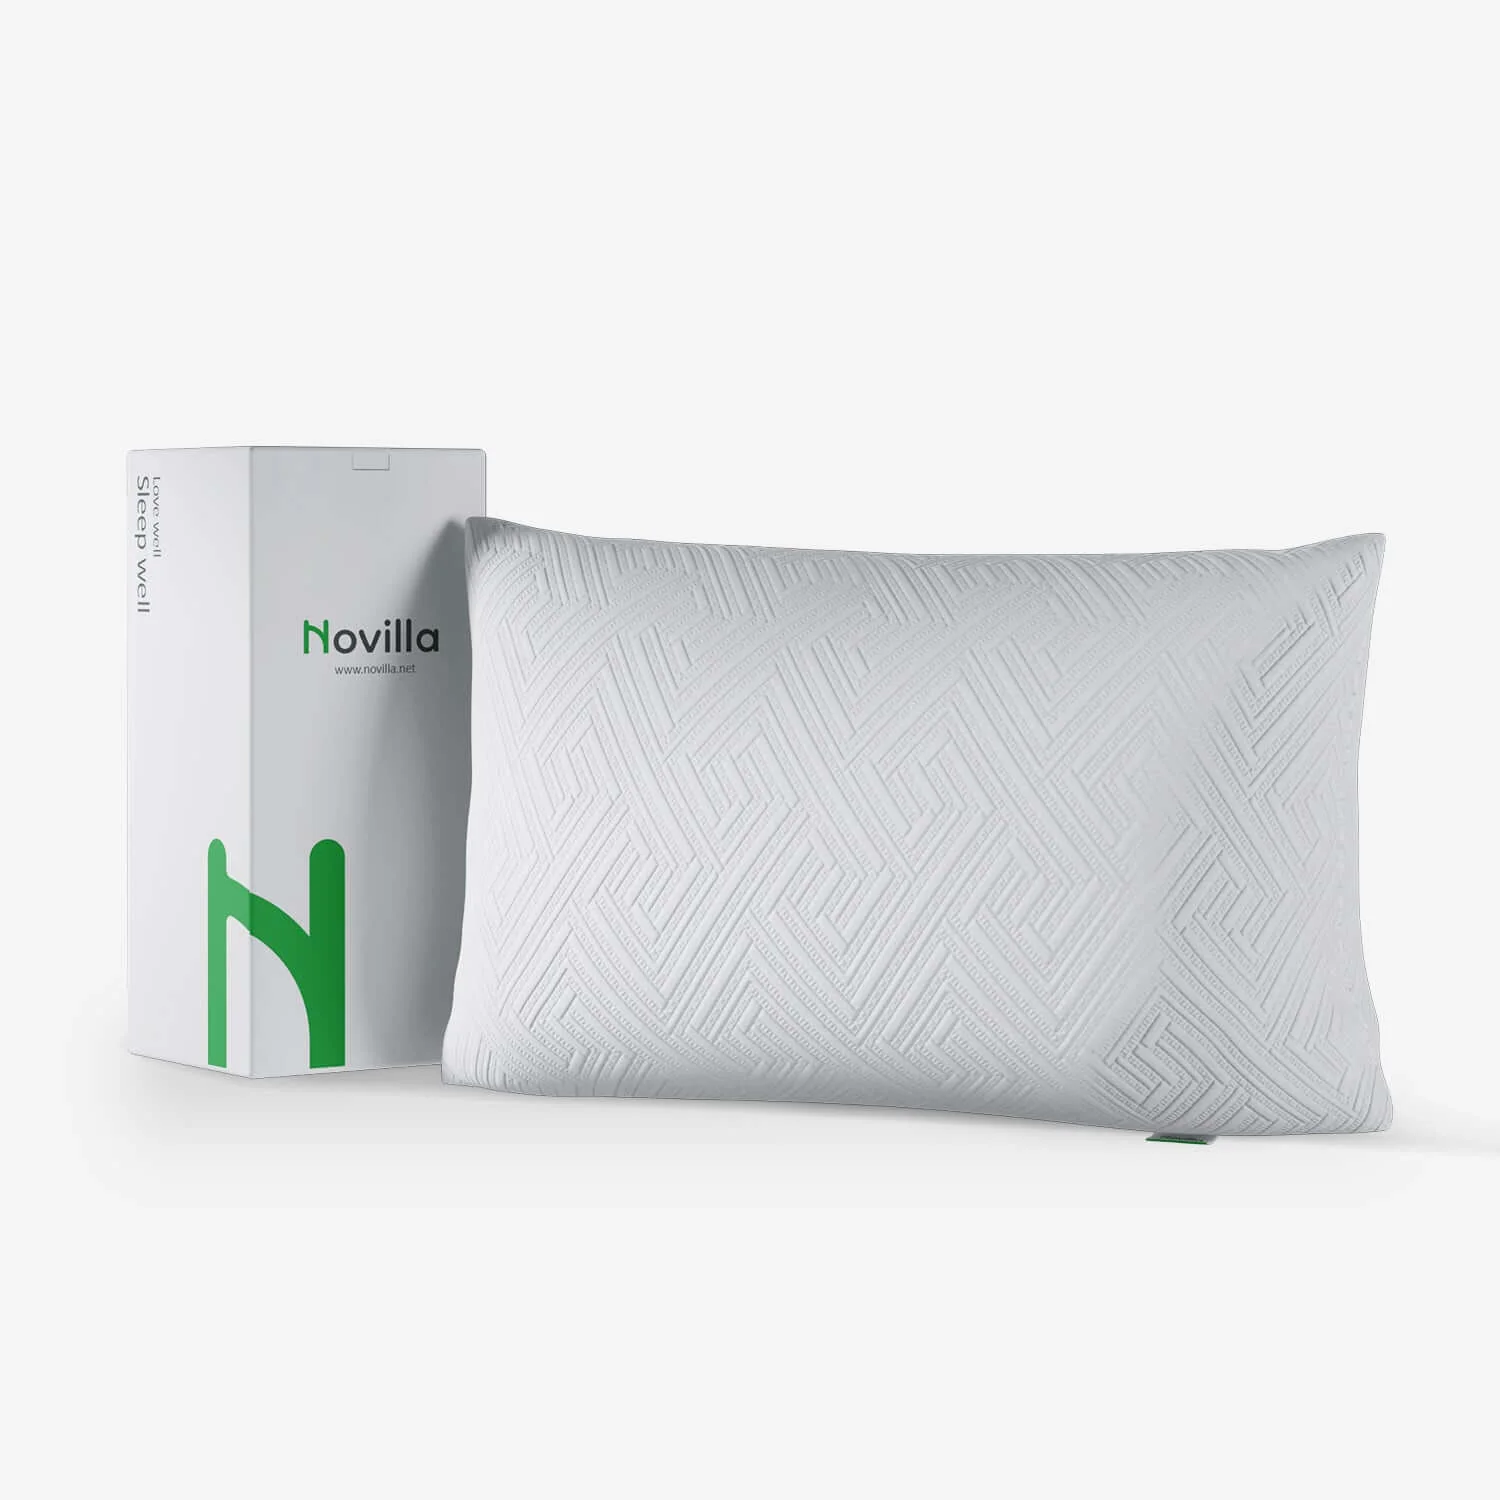 Novilla Shredded Memory Foam Cooling Pillow
